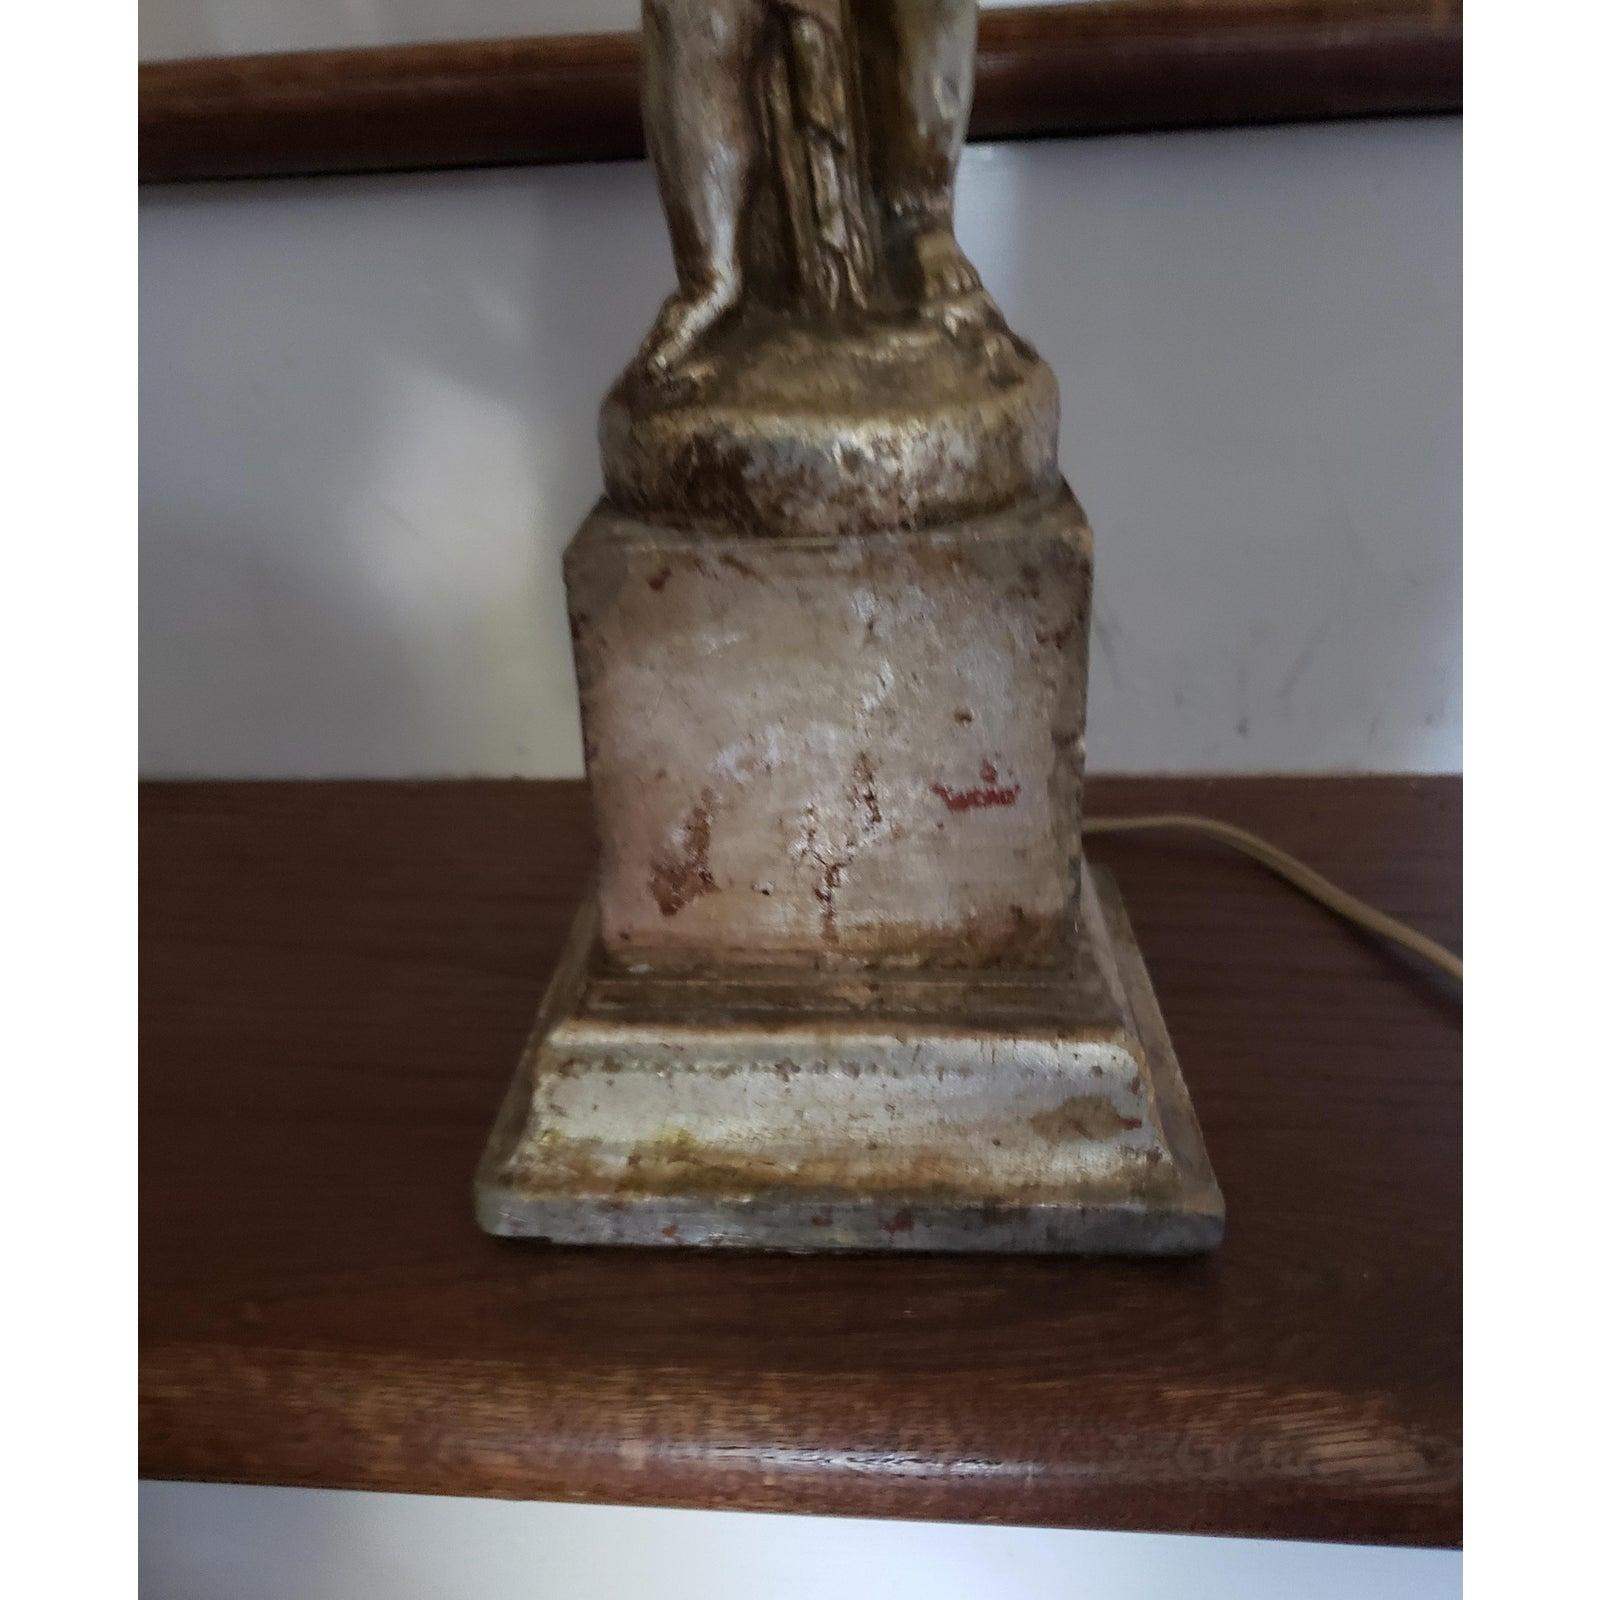 Rare lampe de table antique Cherub.
L'abat-jour n'est pas inclus.
  